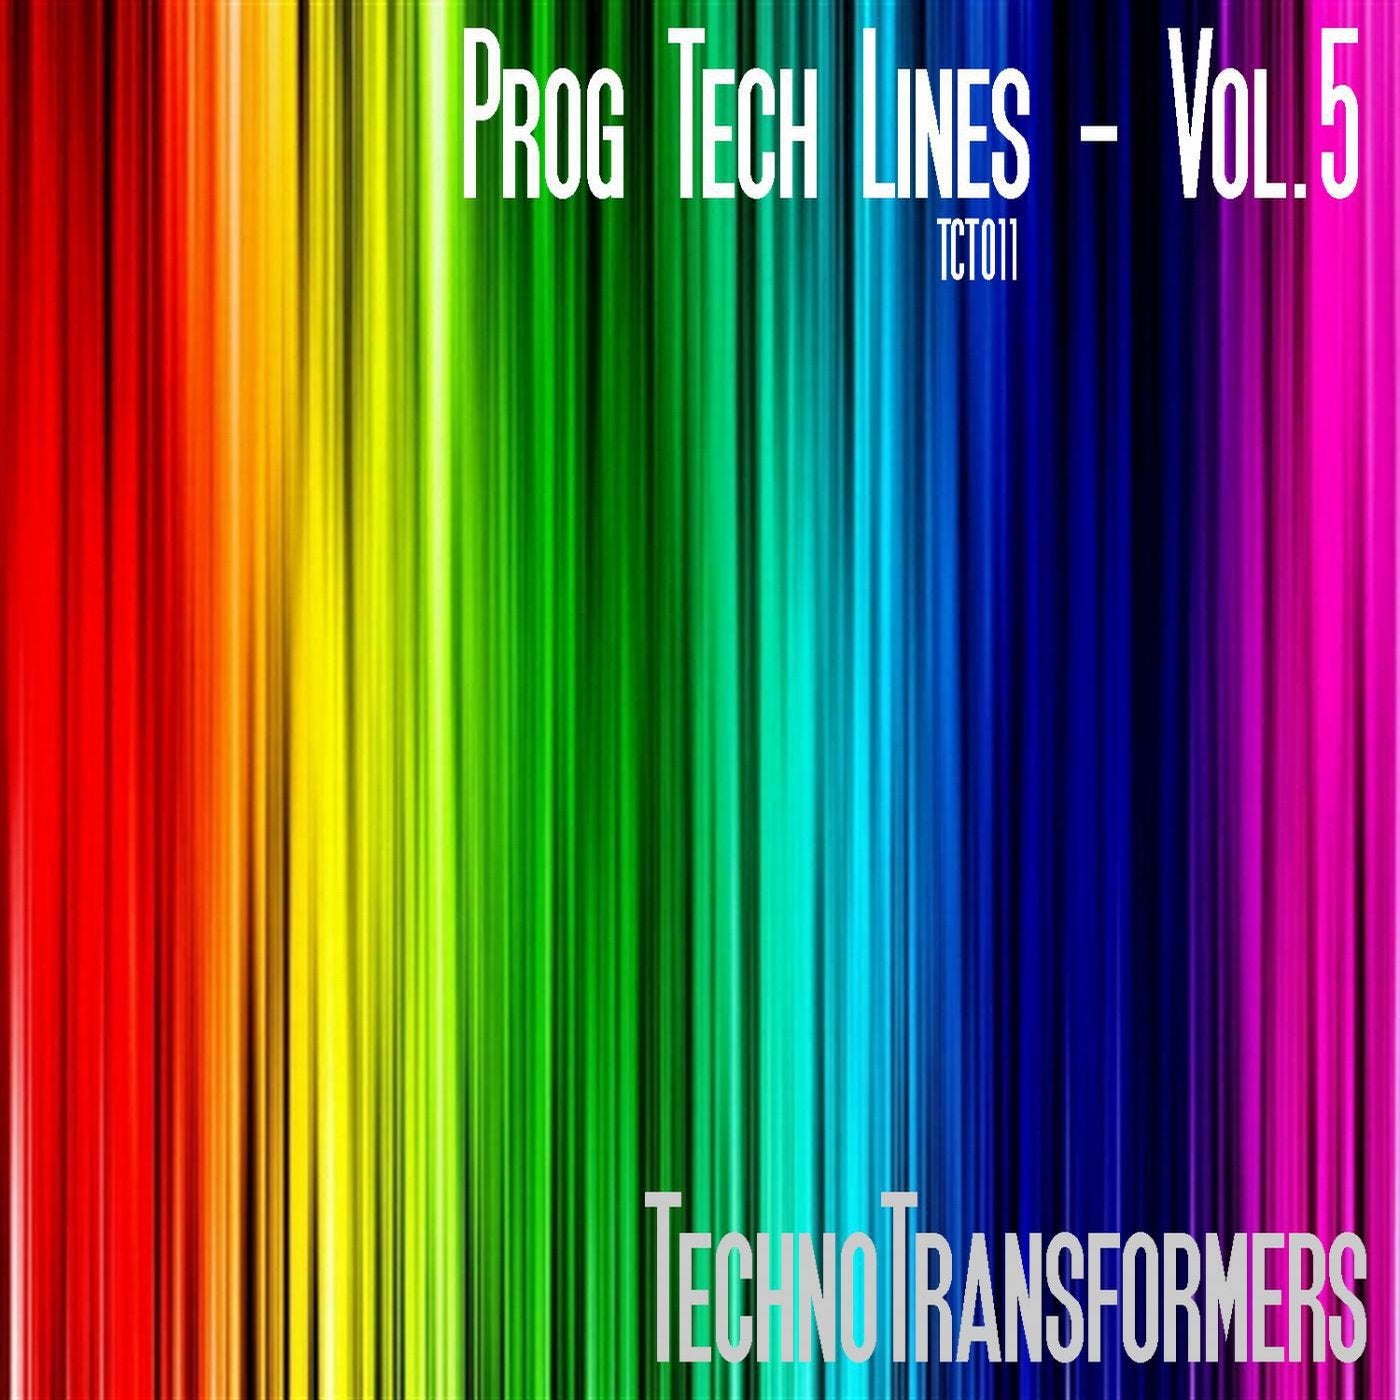 Prog Tech Lines - Vol.5